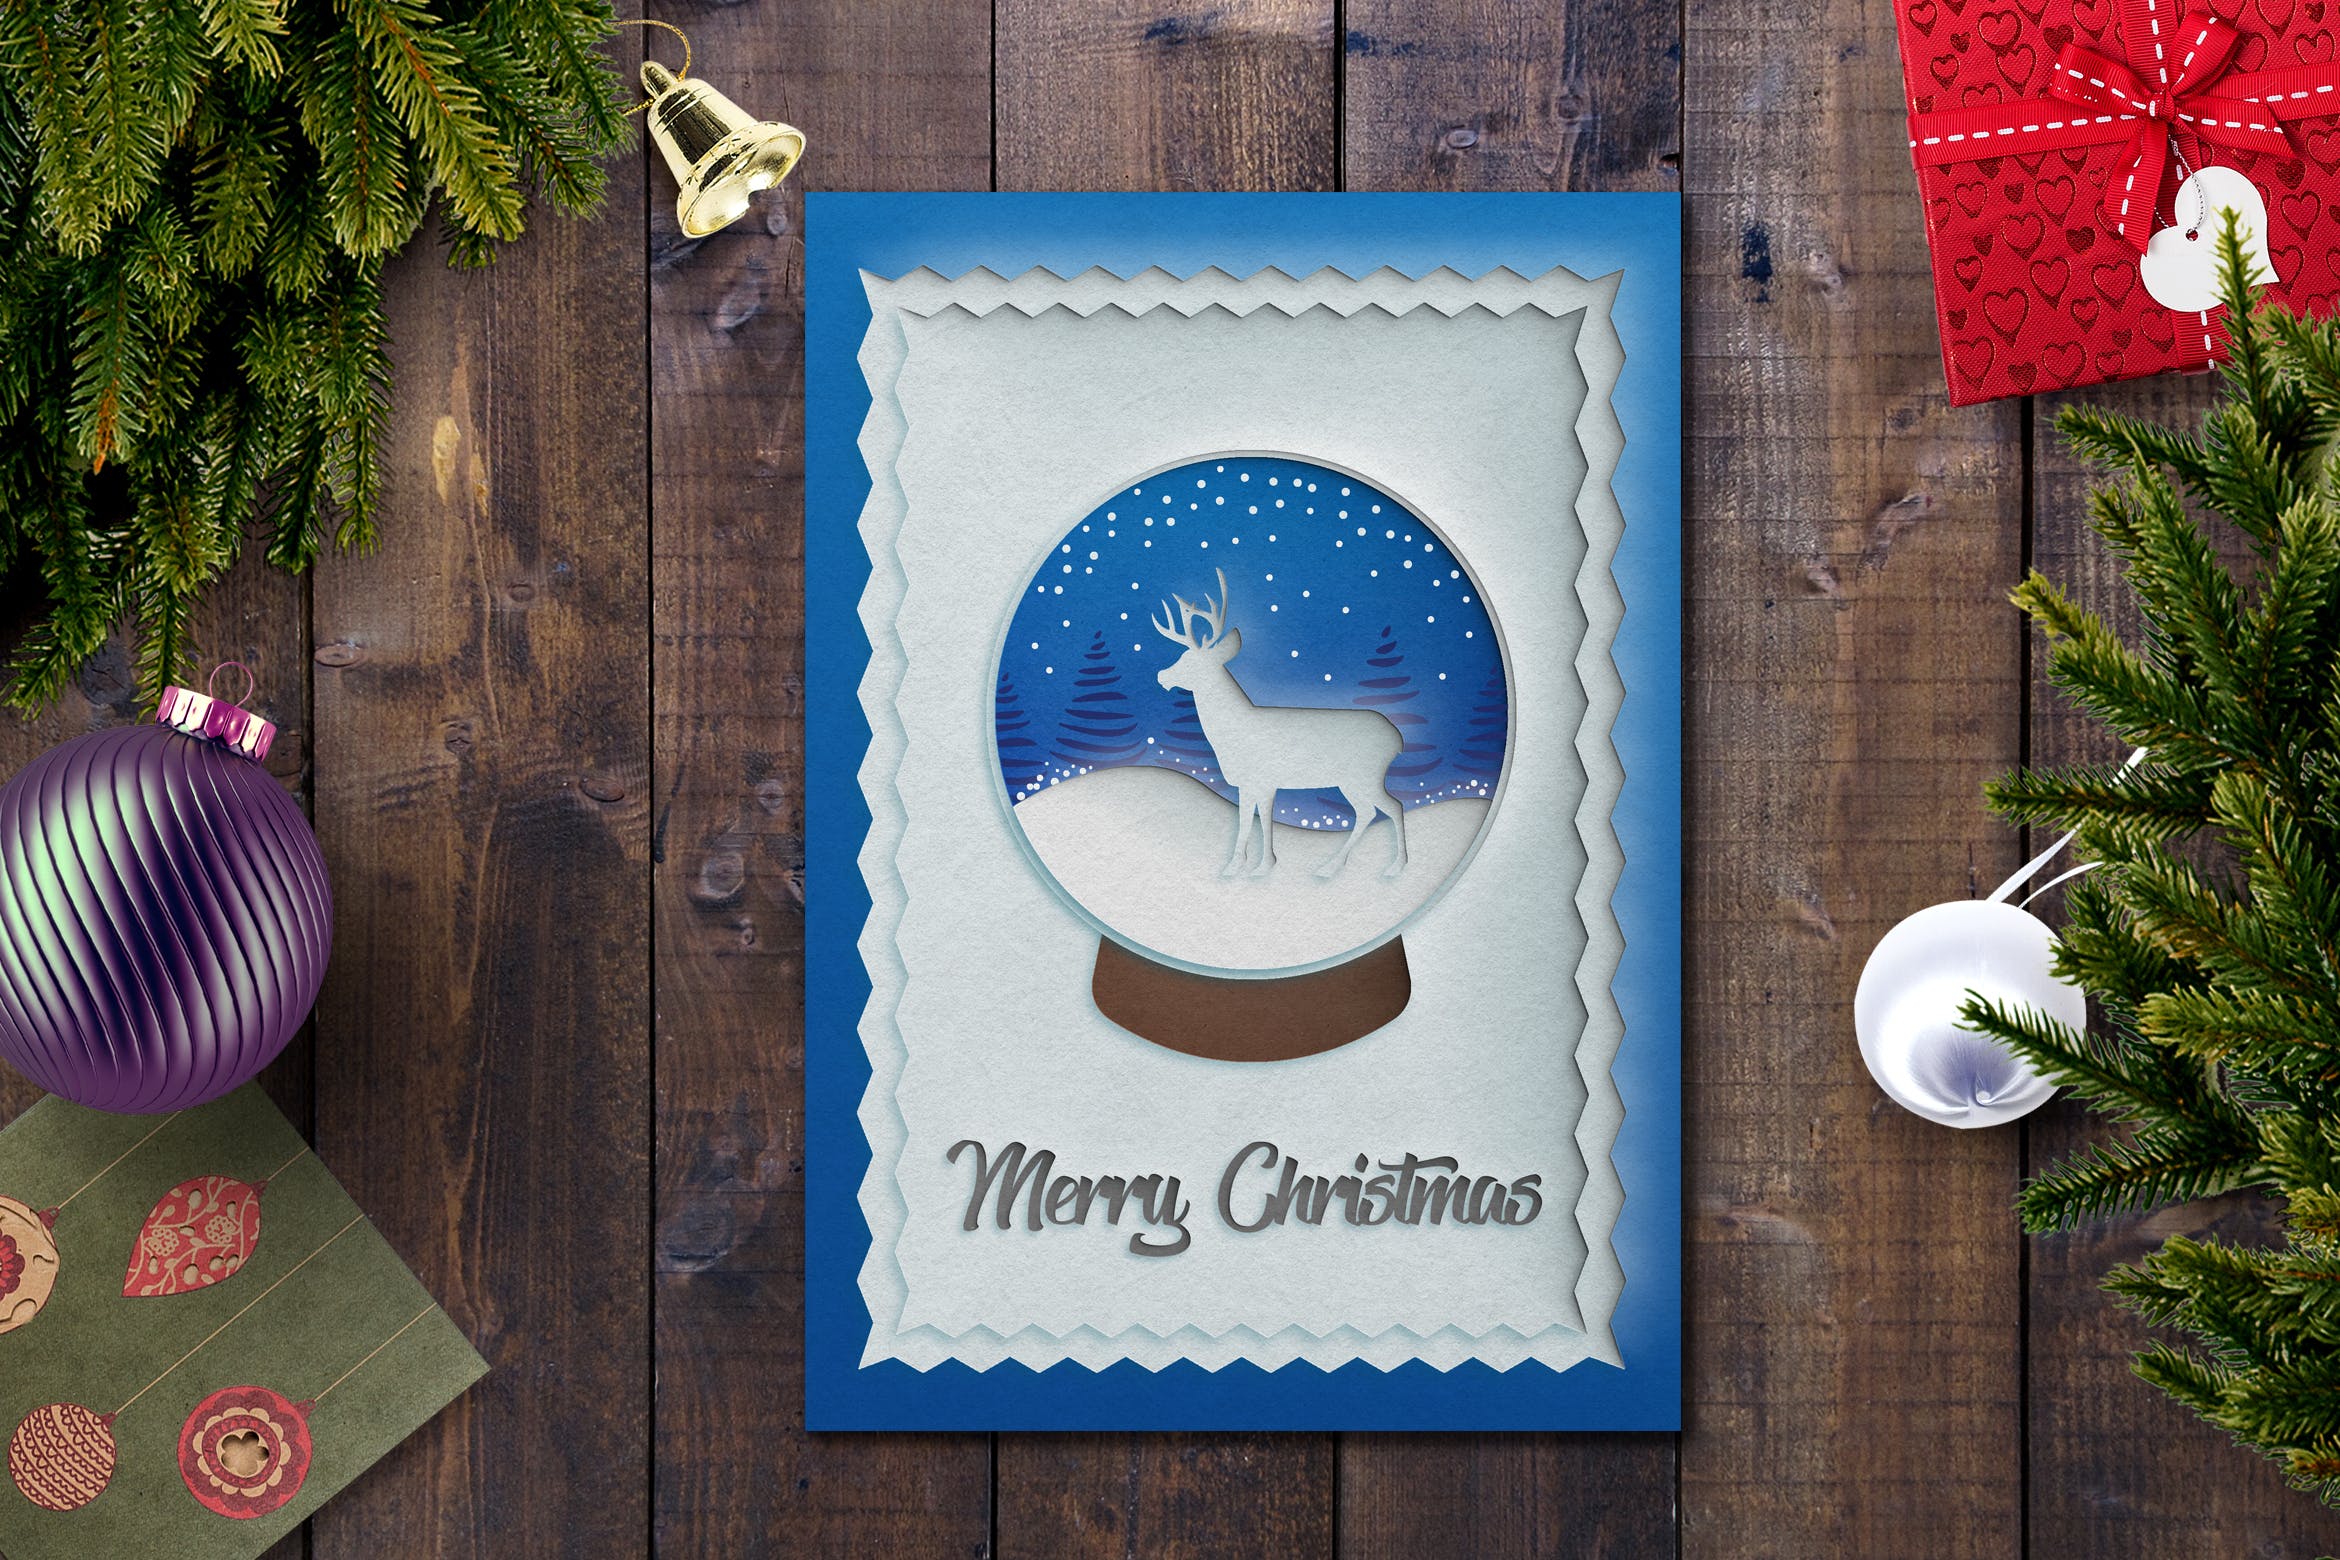 立体剪纸艺术风格圣诞节贺卡设计模板 Christmas Card Template插图